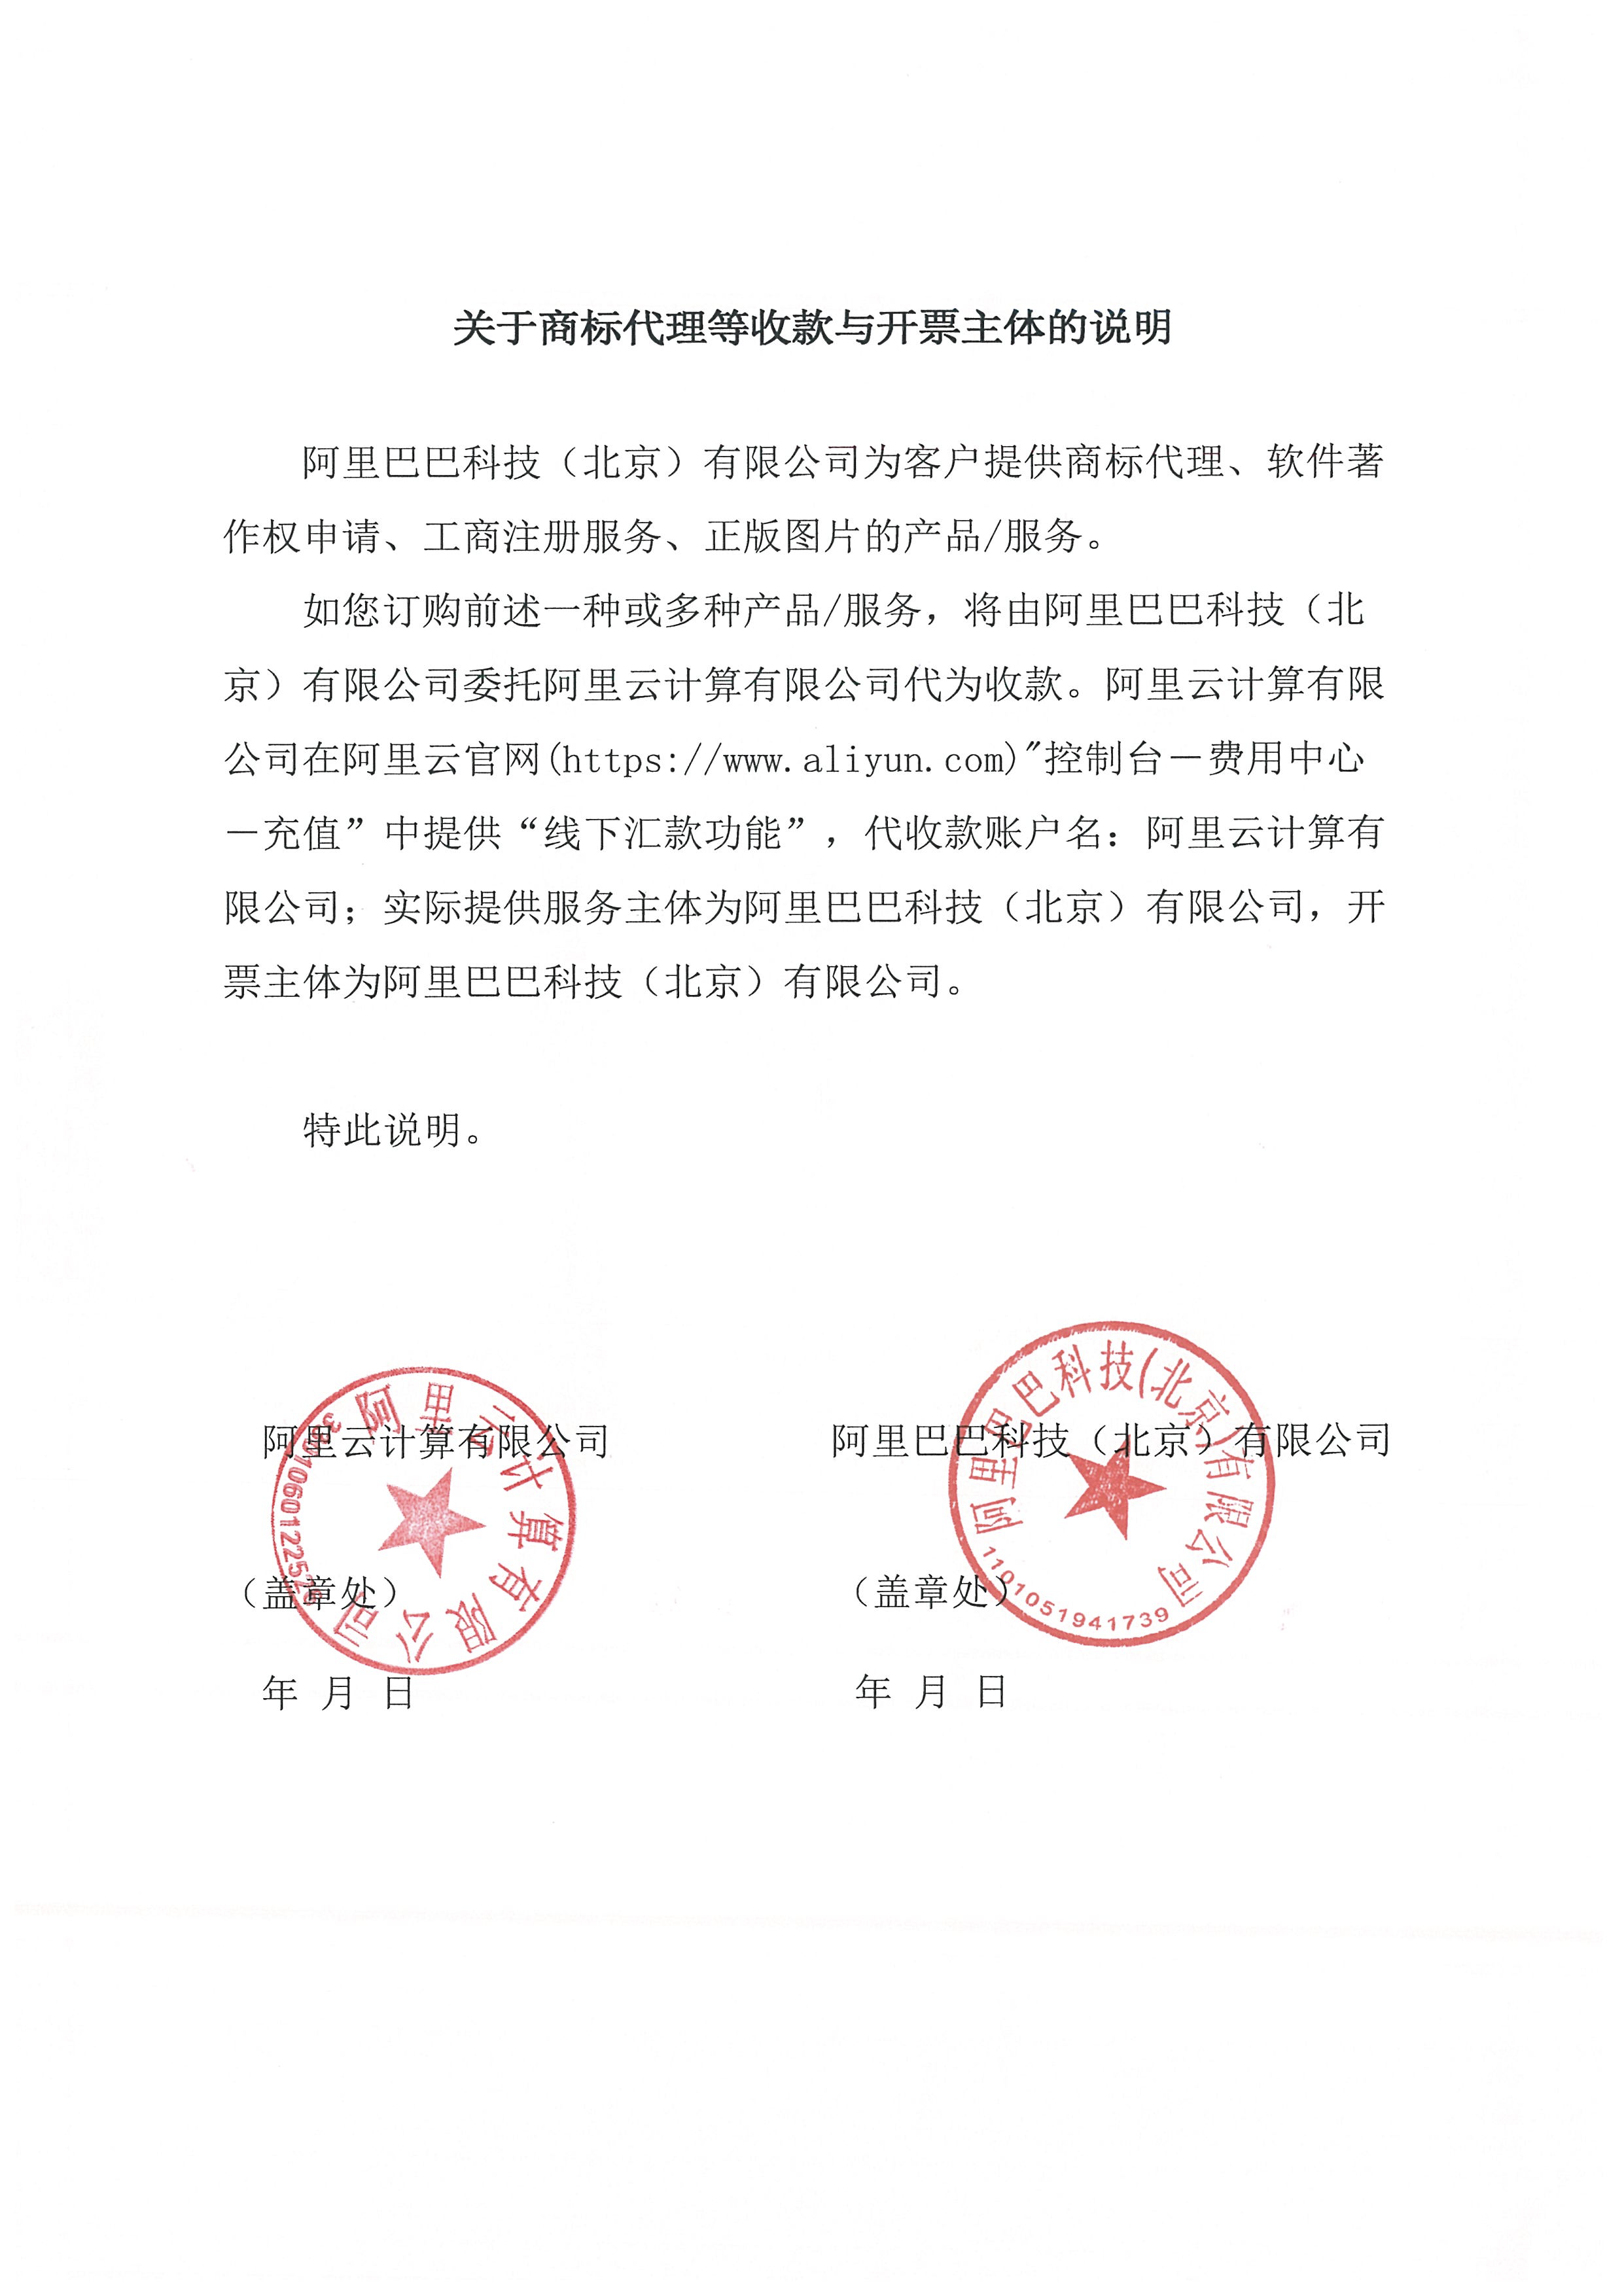 阿里巴巴科技（北京）开票主体说明